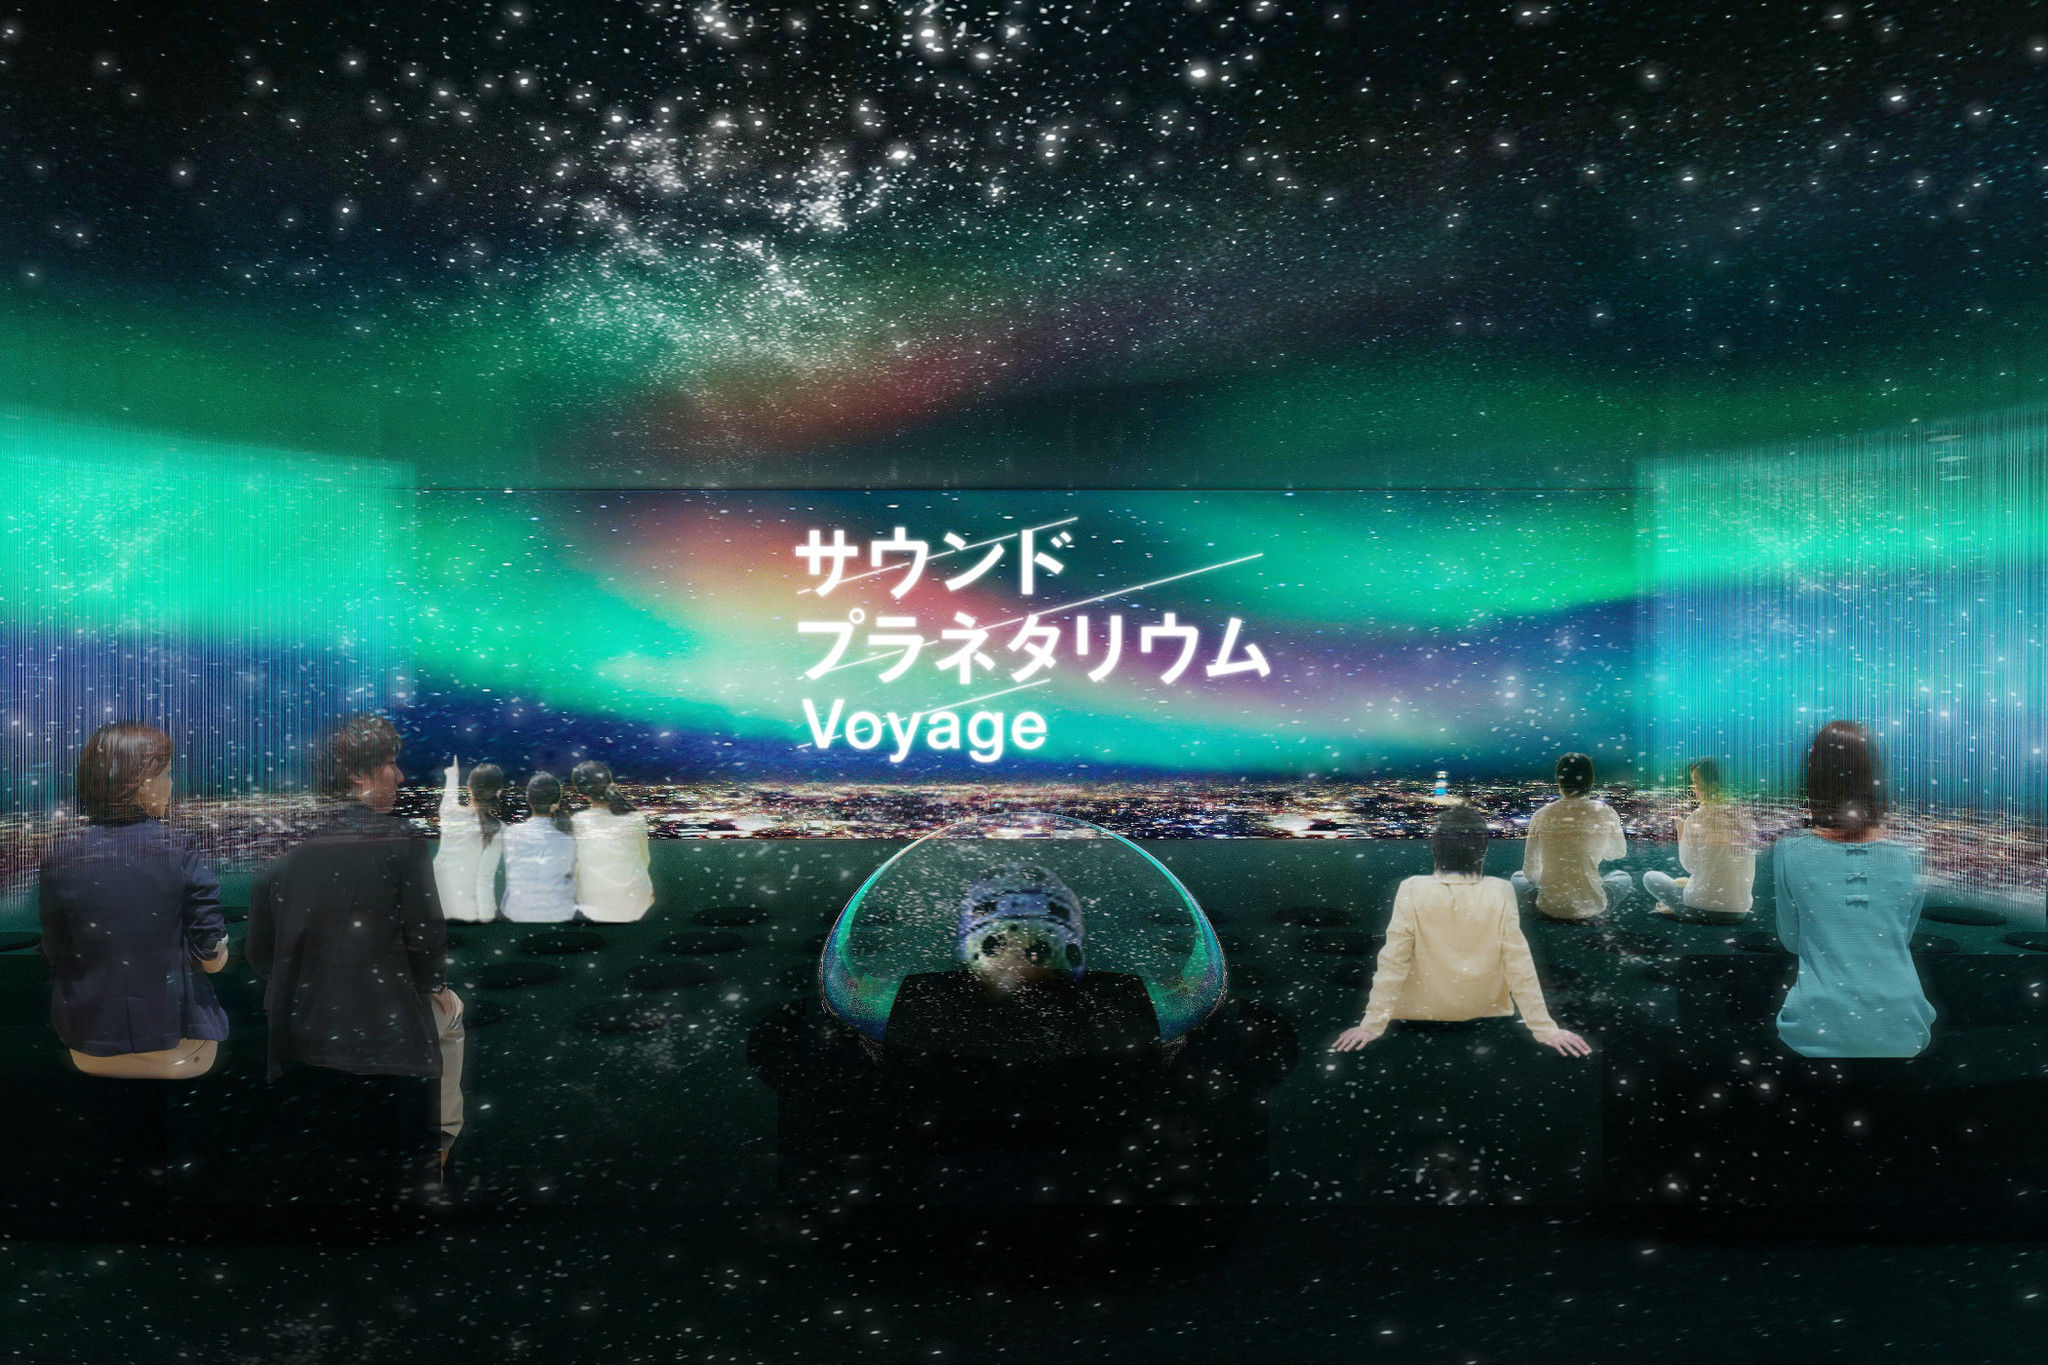 サウンドプラネタリウム Voyage ヴォヤージュ 16年12月9日よりスタート ソニー株式会社のプレスリリース